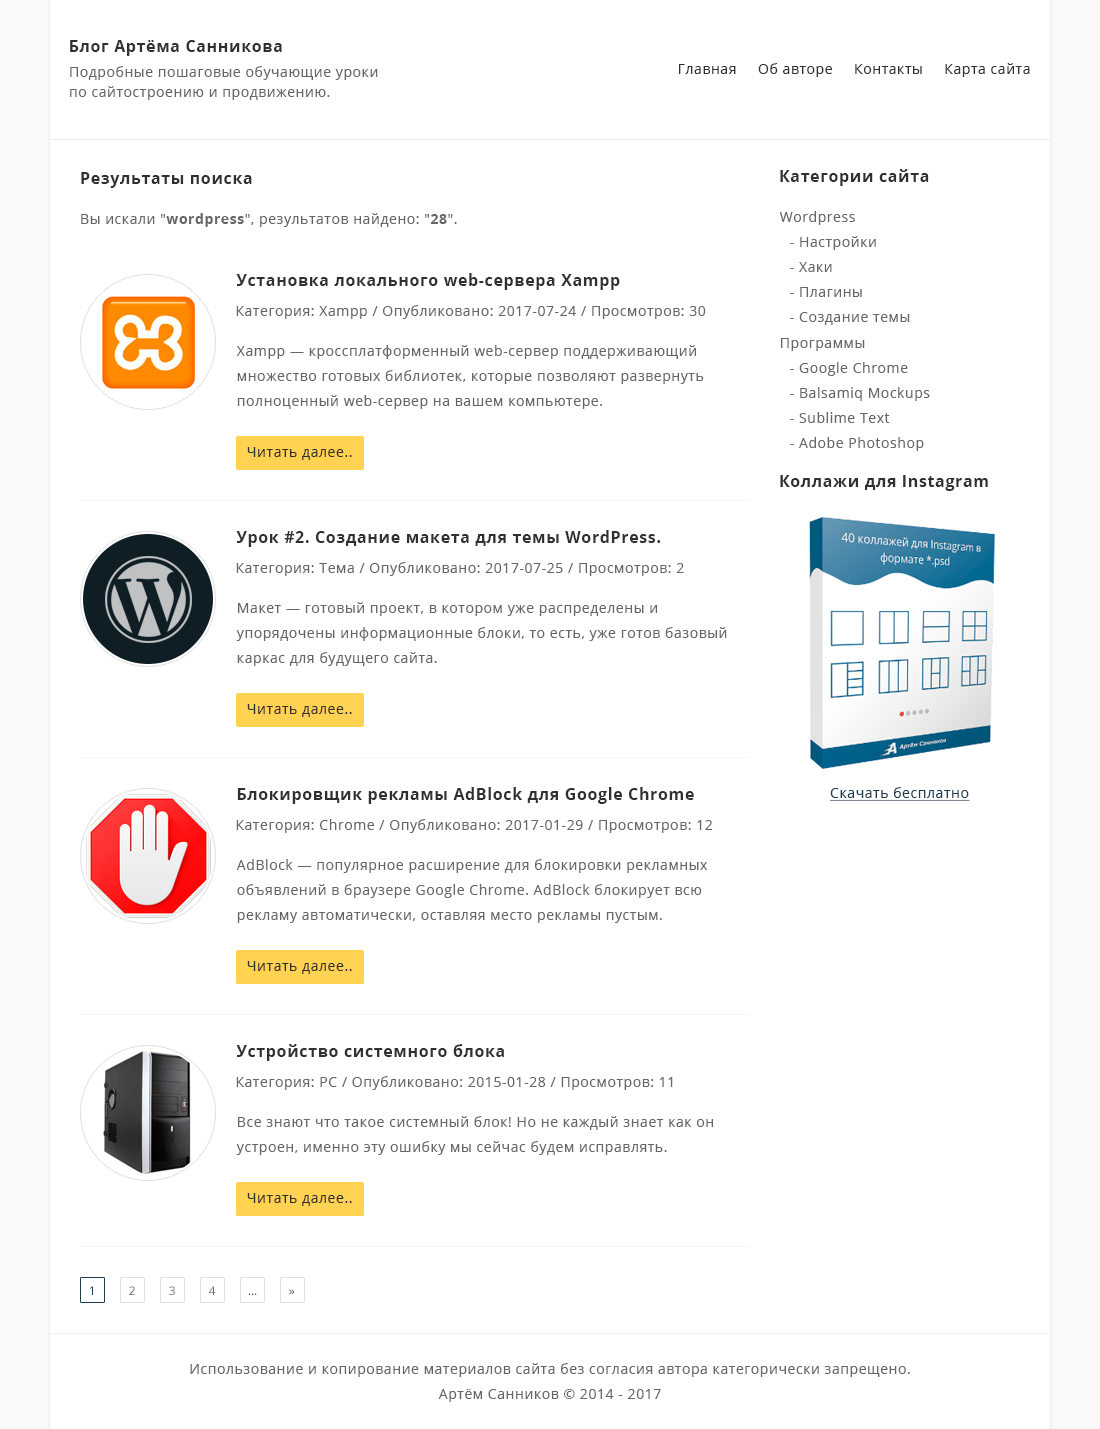 Дизайн страницы с результатами поиска для темы WordPress в Adobe Photoshop